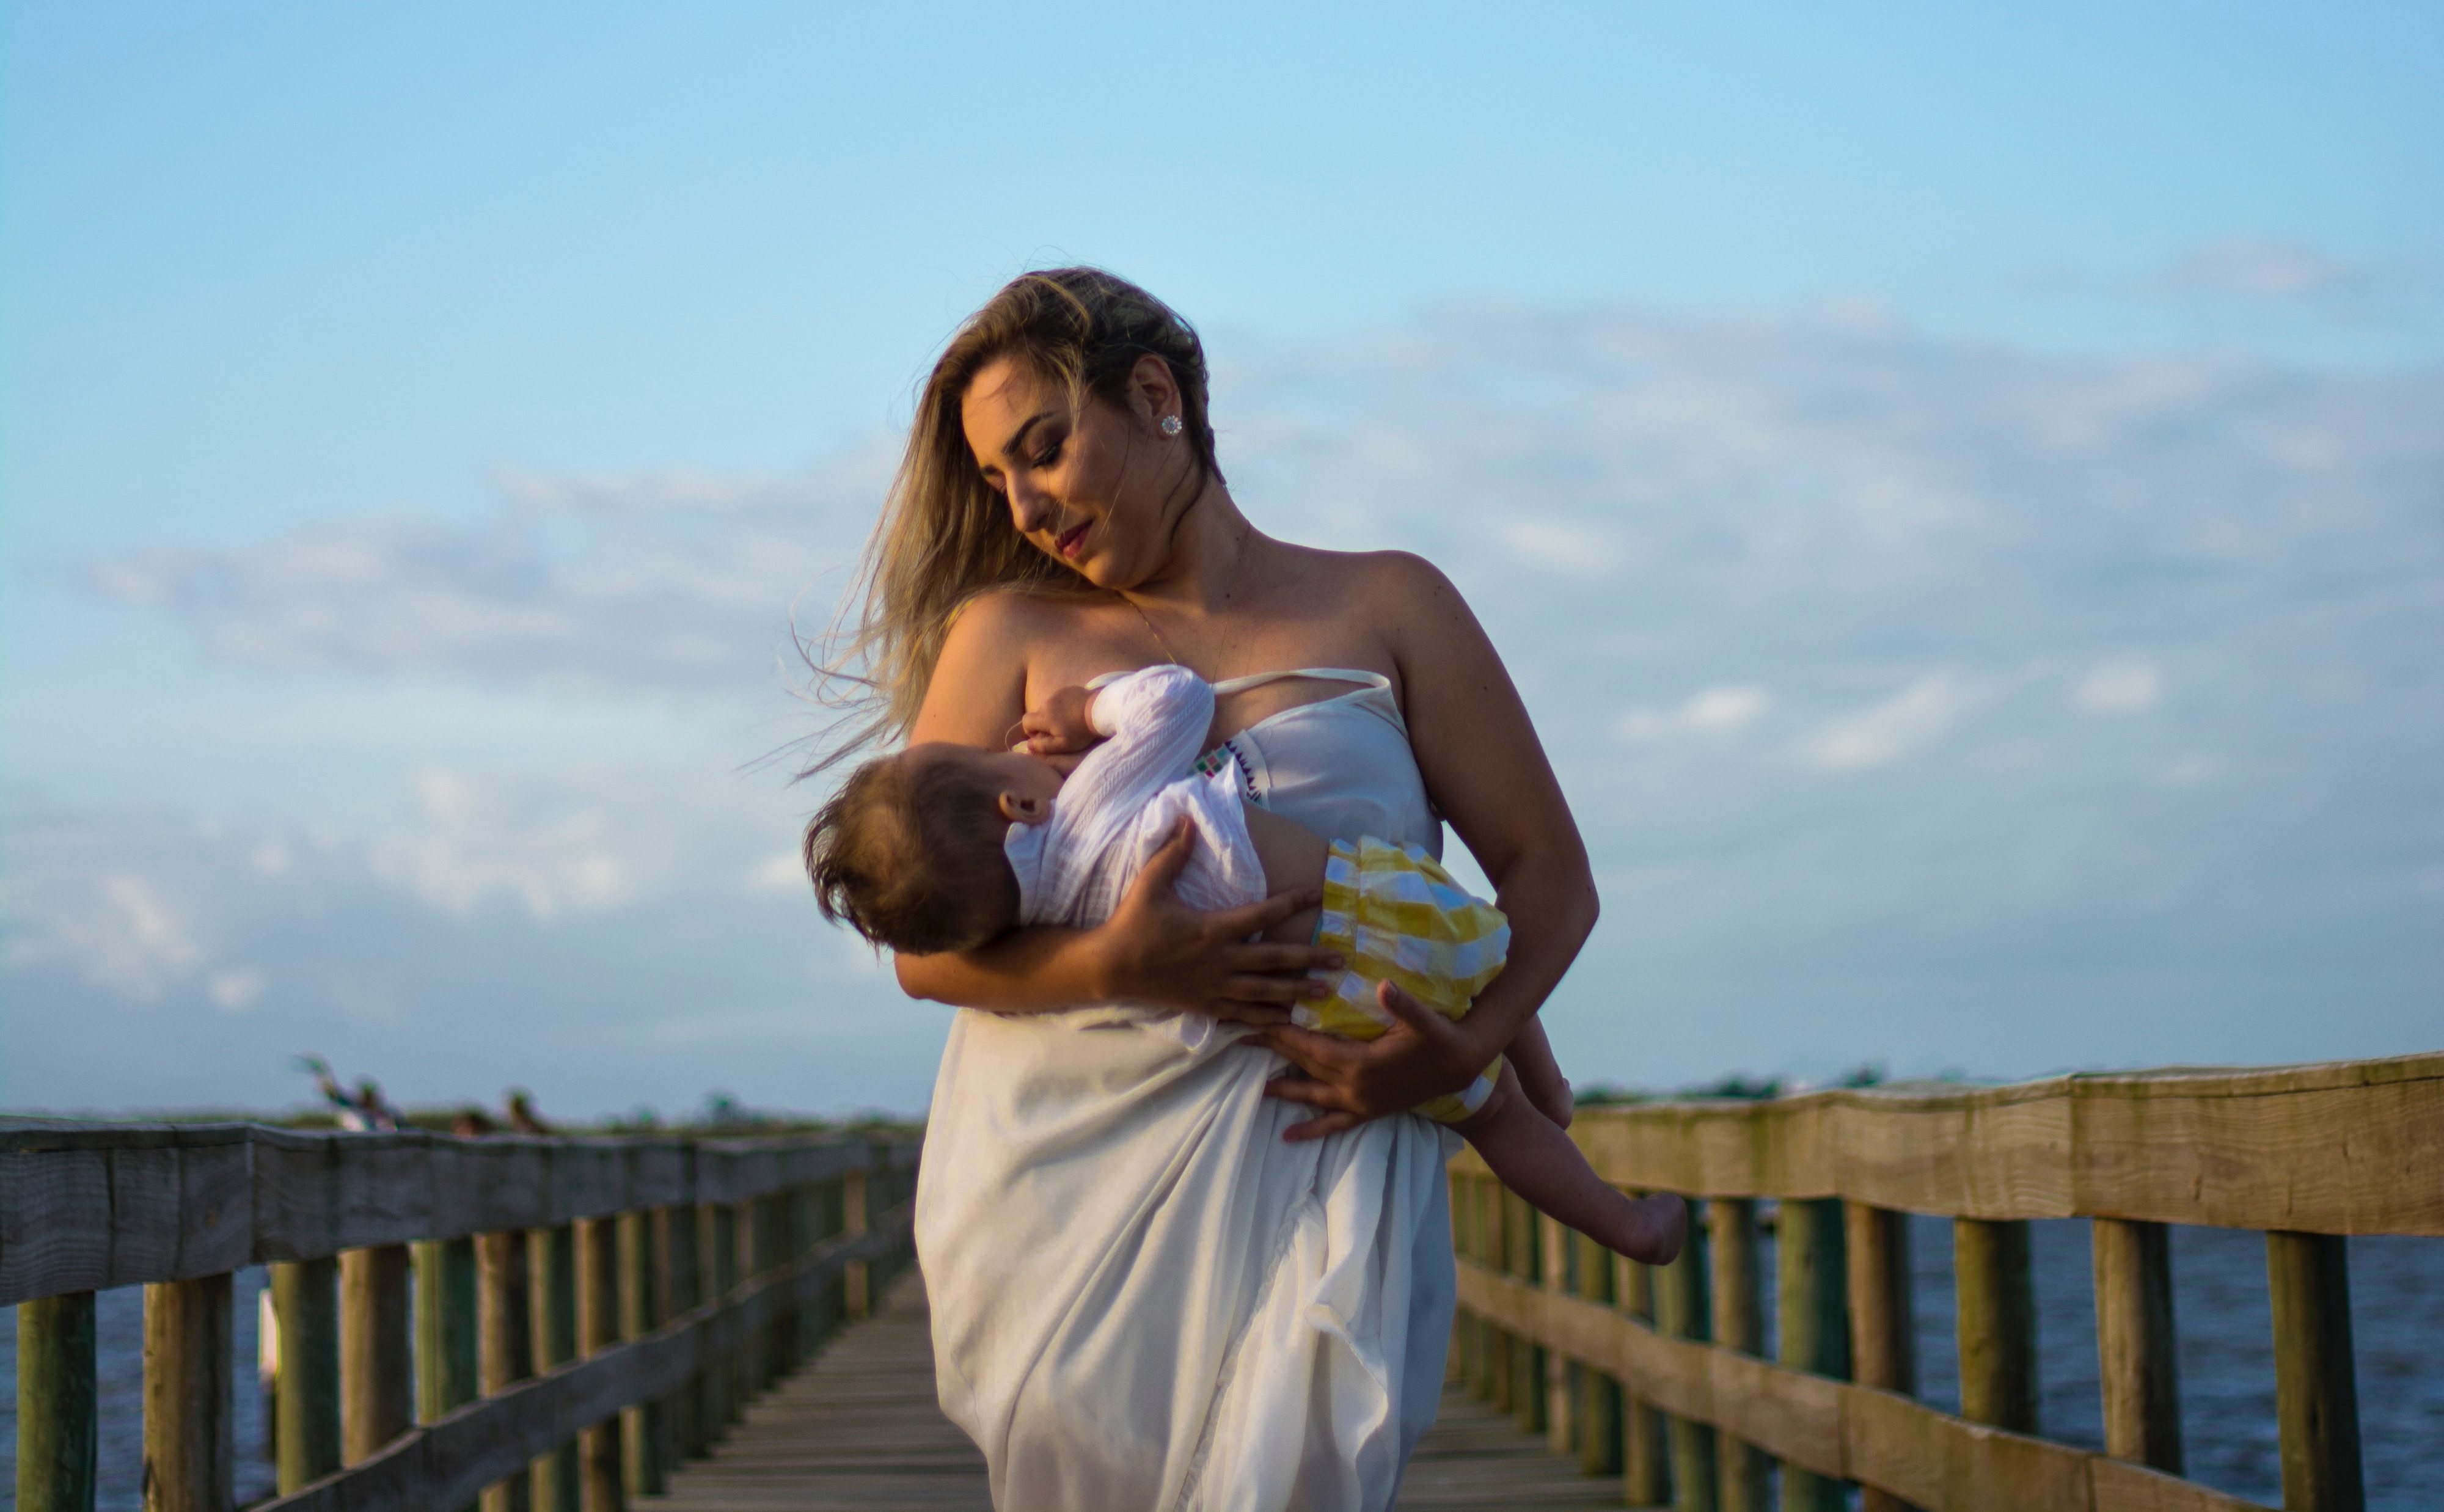 Desarrollo del cerebro: Estrategias para estimular los sentidos del bebé durante la lactancia materna Marielena Aguilar Contributor Miami Moms Blog